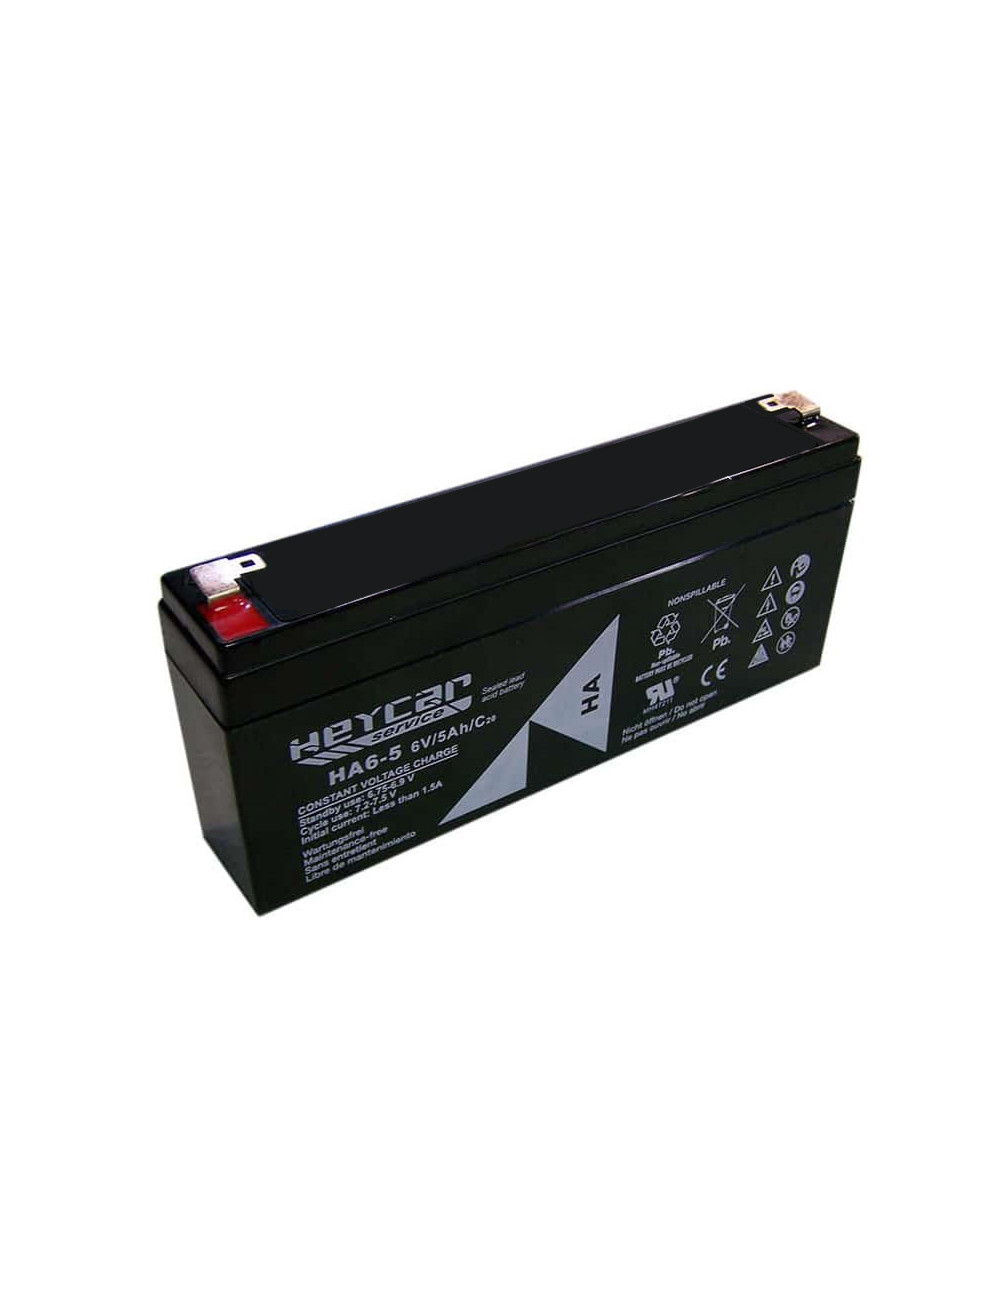 Batería para balanza digital 6V 5Ah C20 Heycar Service HA6-5 - HA6-5 -  - 8435231203173 - 1